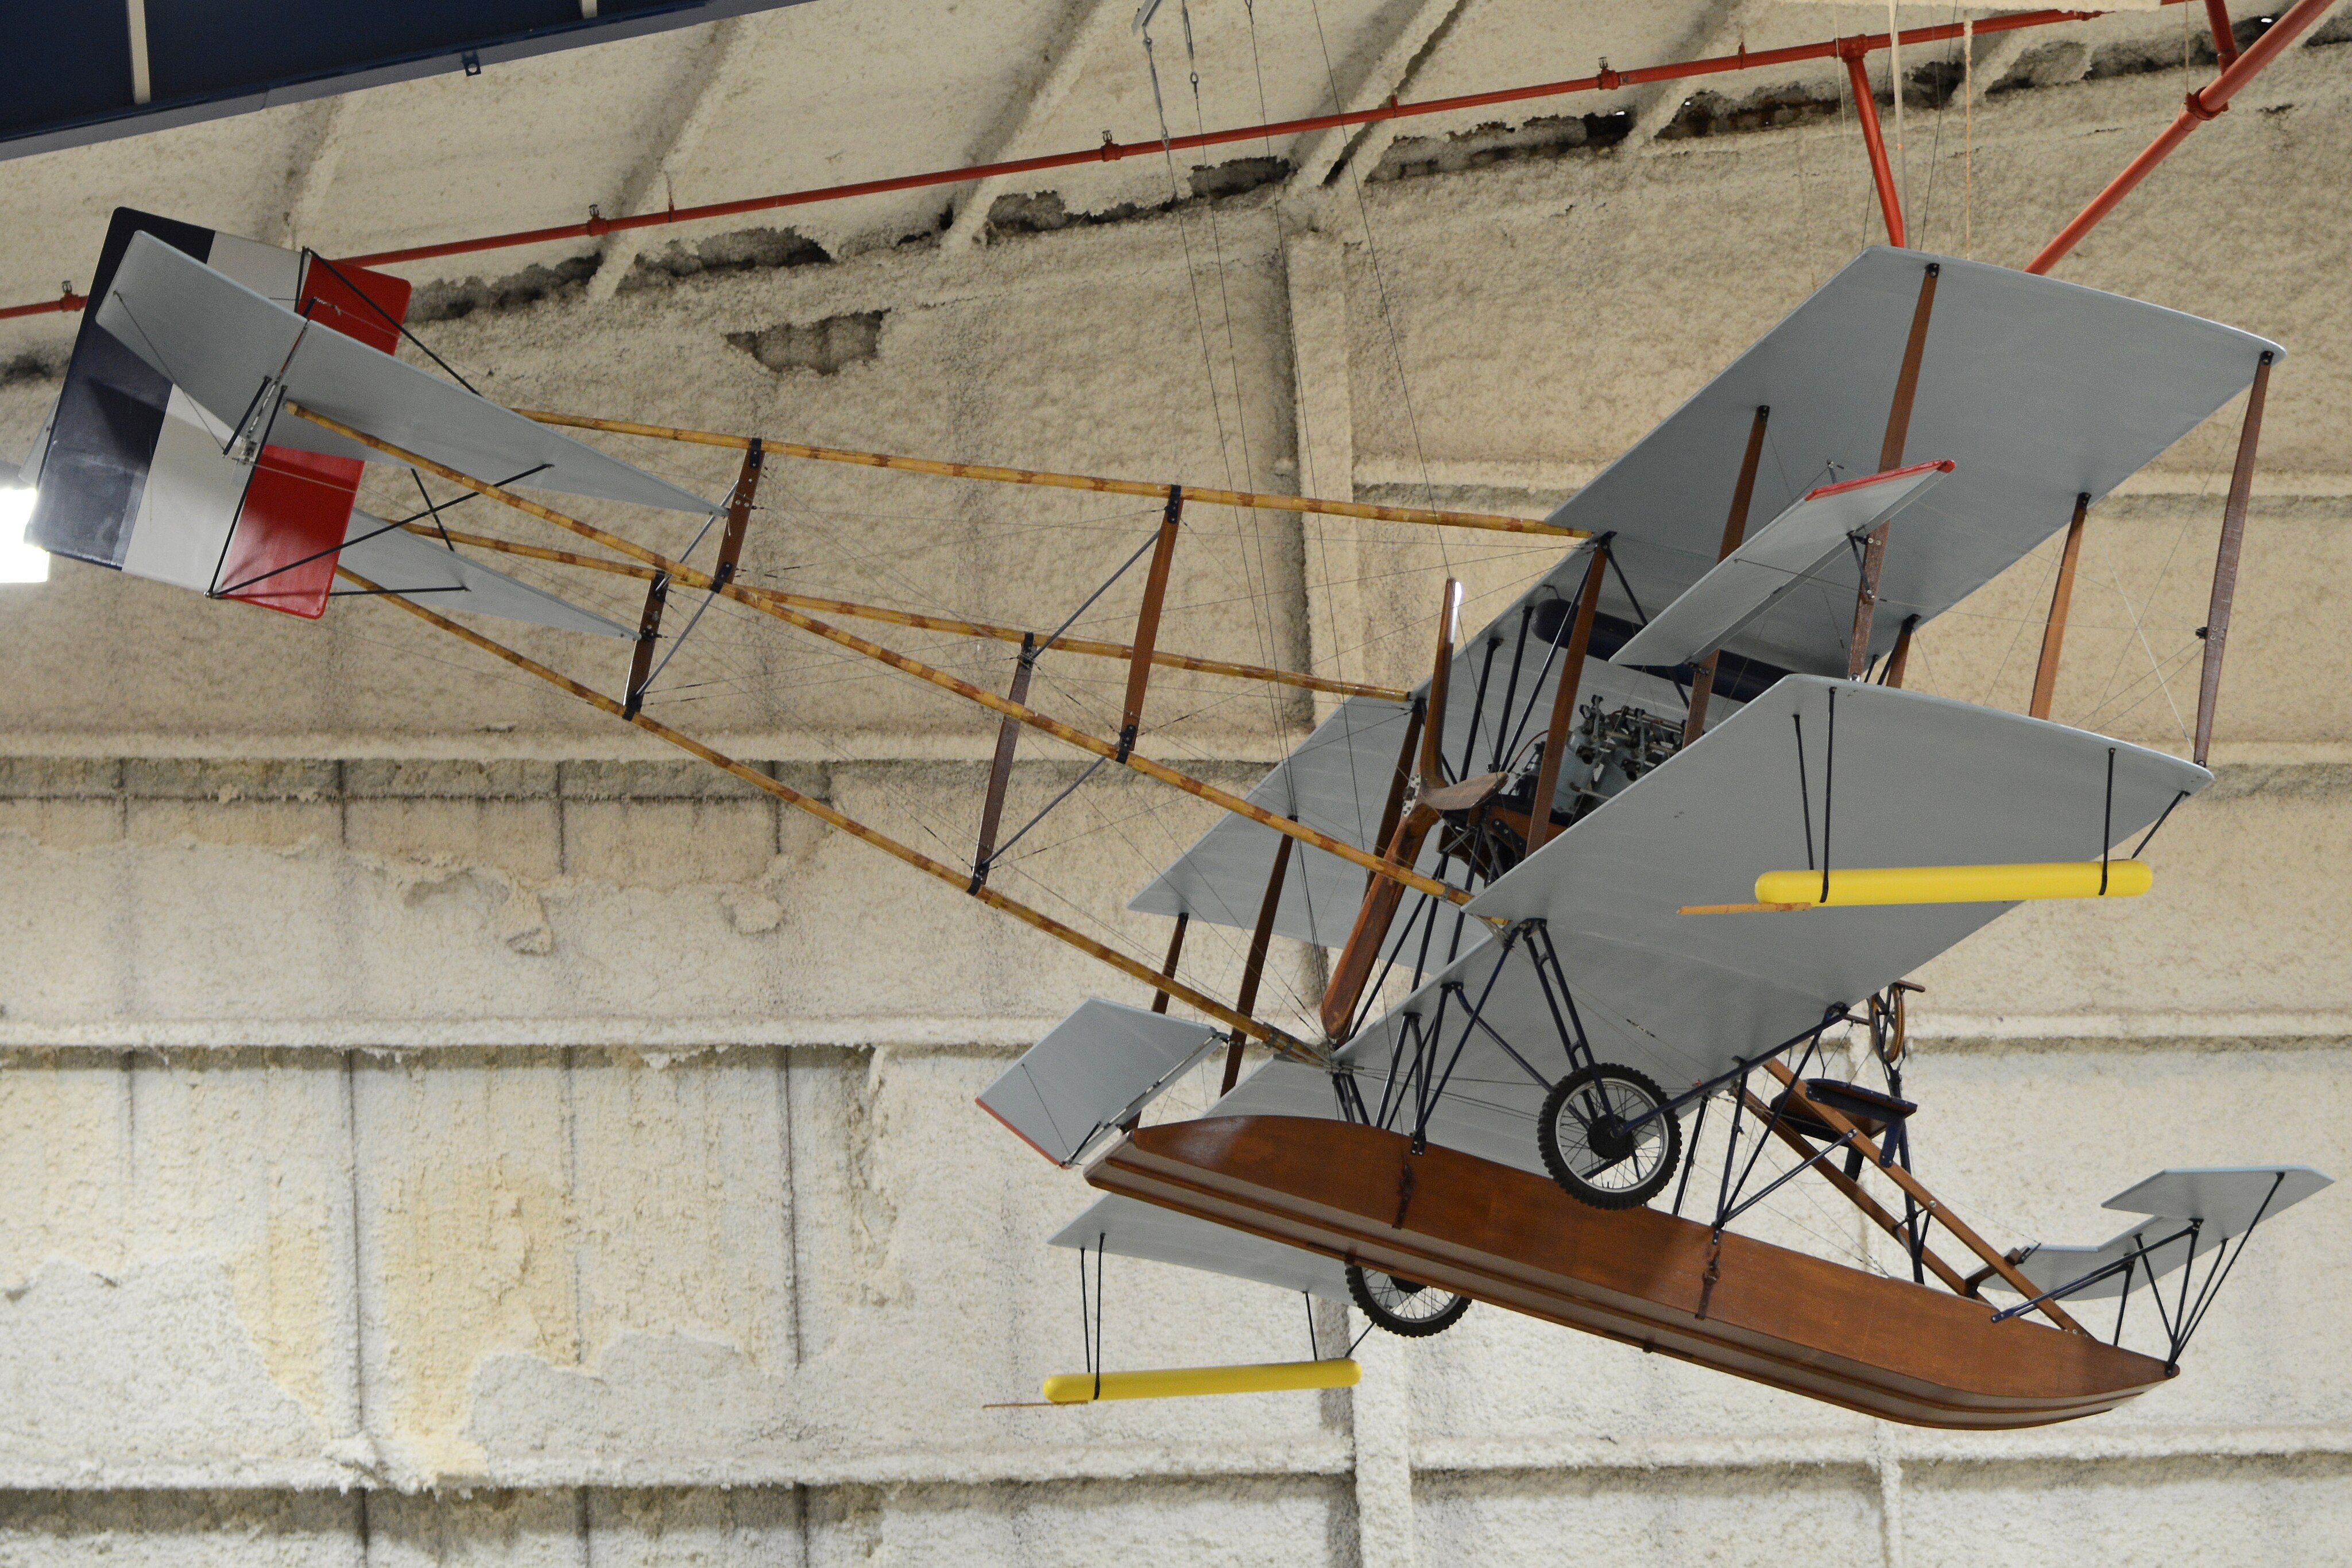 A model of the Glenn Curtiss Triad on display.